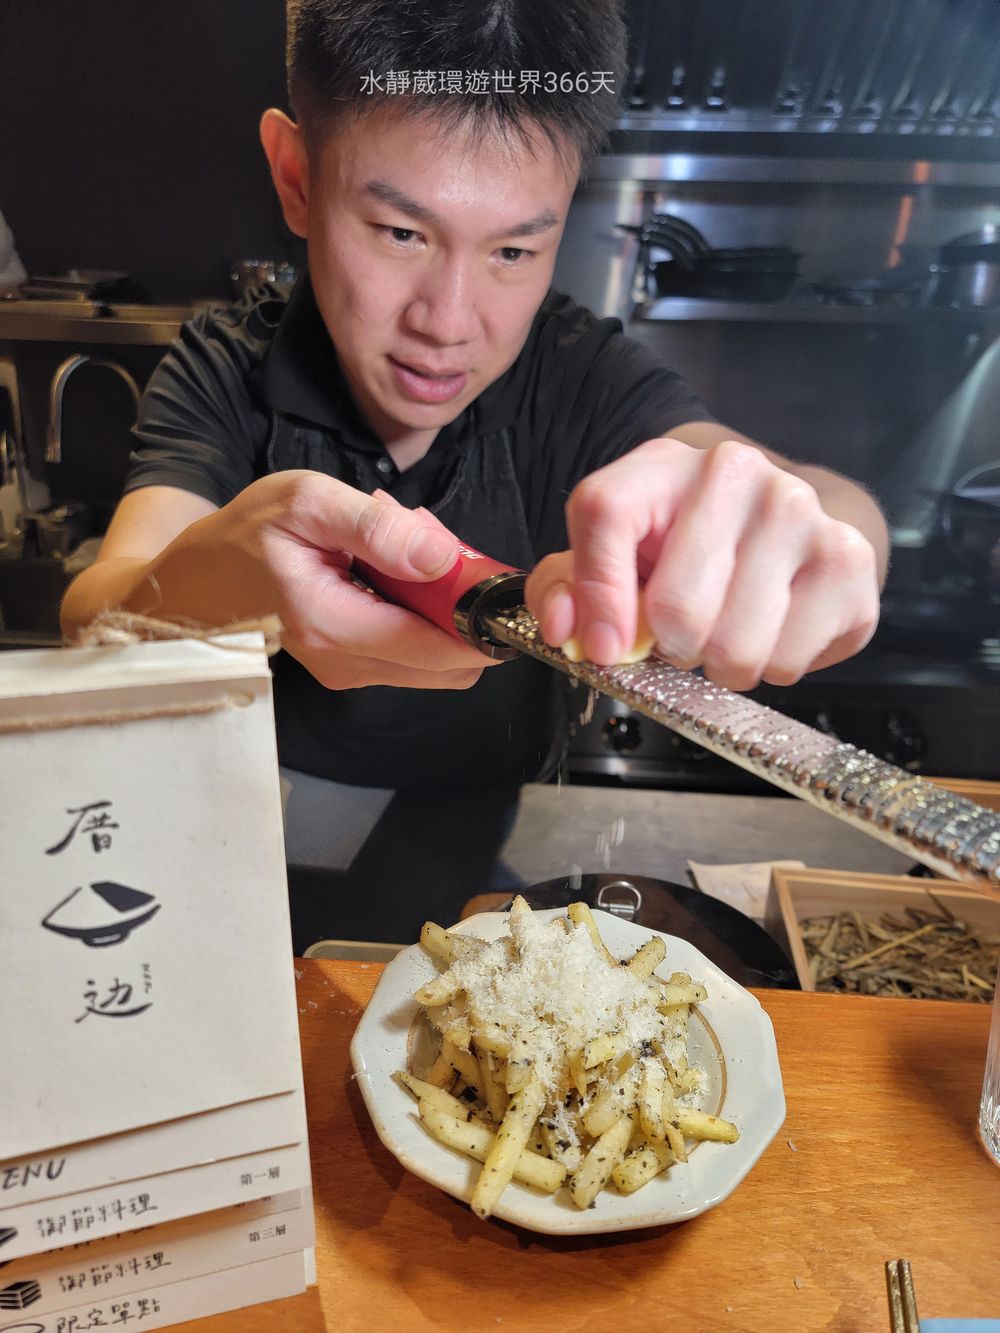 「厝边n.b.r」的靈魂人物老闆兼主廚菲利浦，本名呂政緯的他於今年在故鄉台南自行創業，開起這間堪稱究極的精緻料理餐廳。